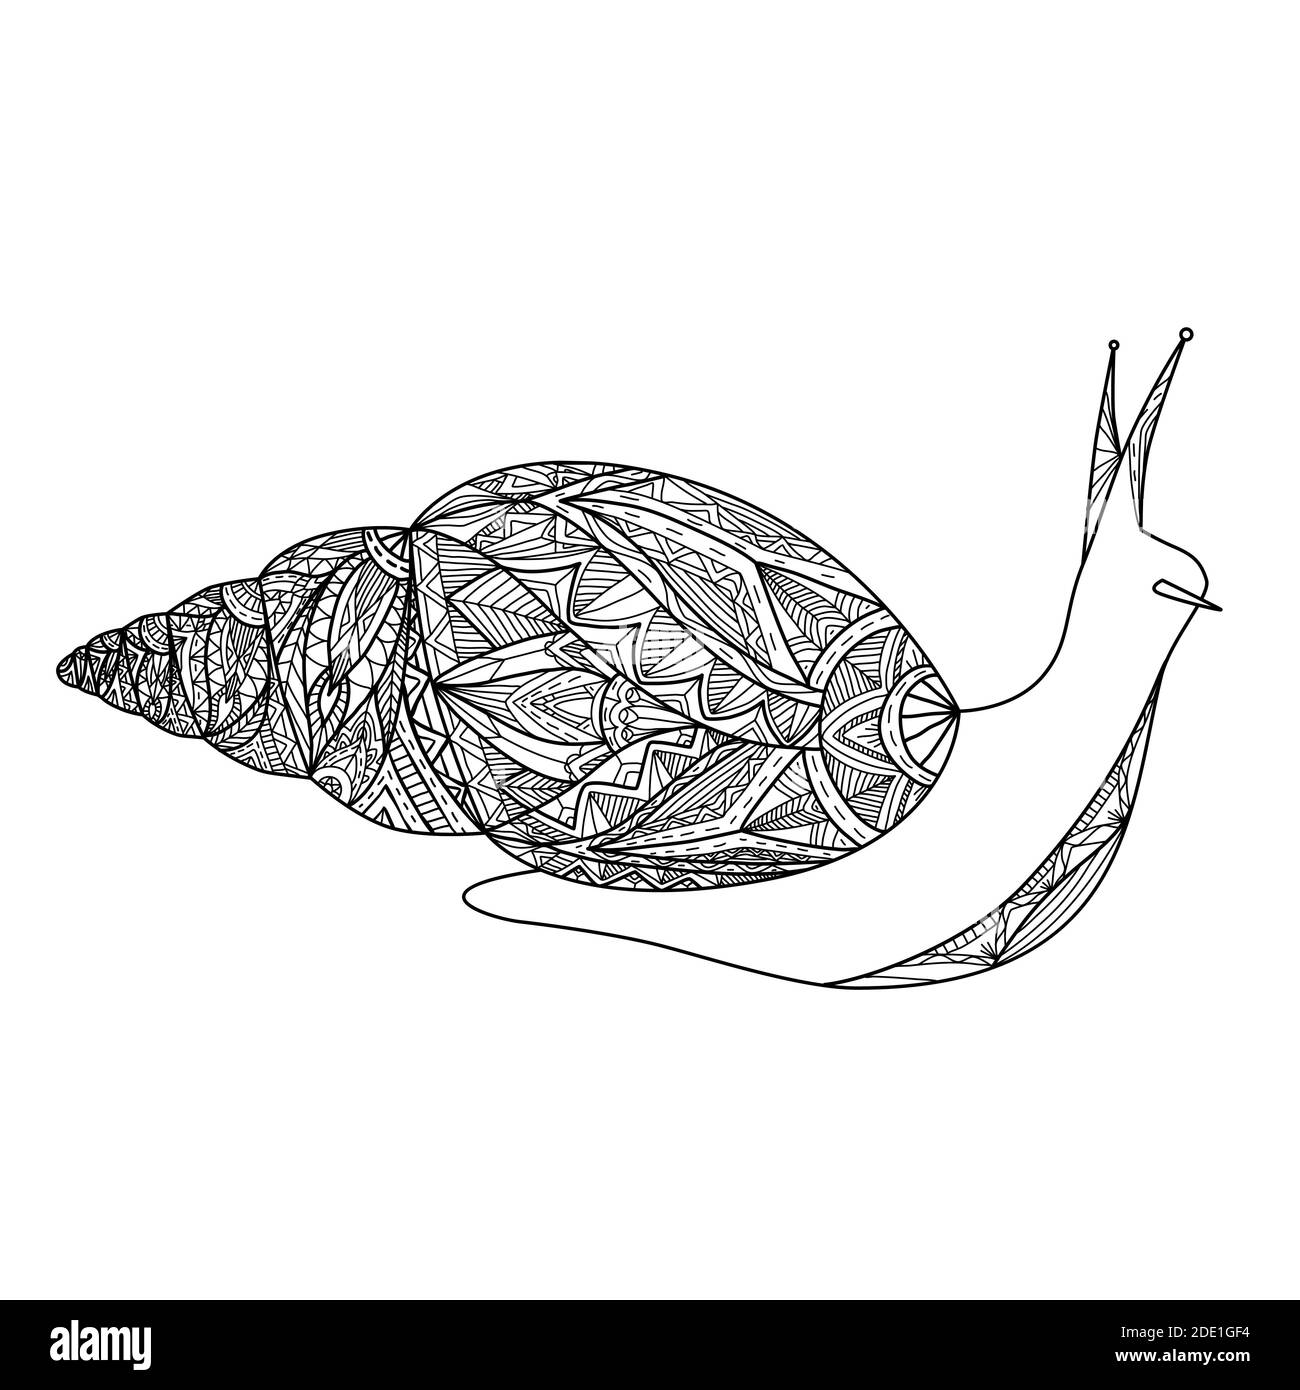 Illustration de contour noir et blanc d'un escargot avec motif boho. Photo de Doodle vectoriel pour colorier des livres, des cartes et votre créativité. Illustration de Vecteur